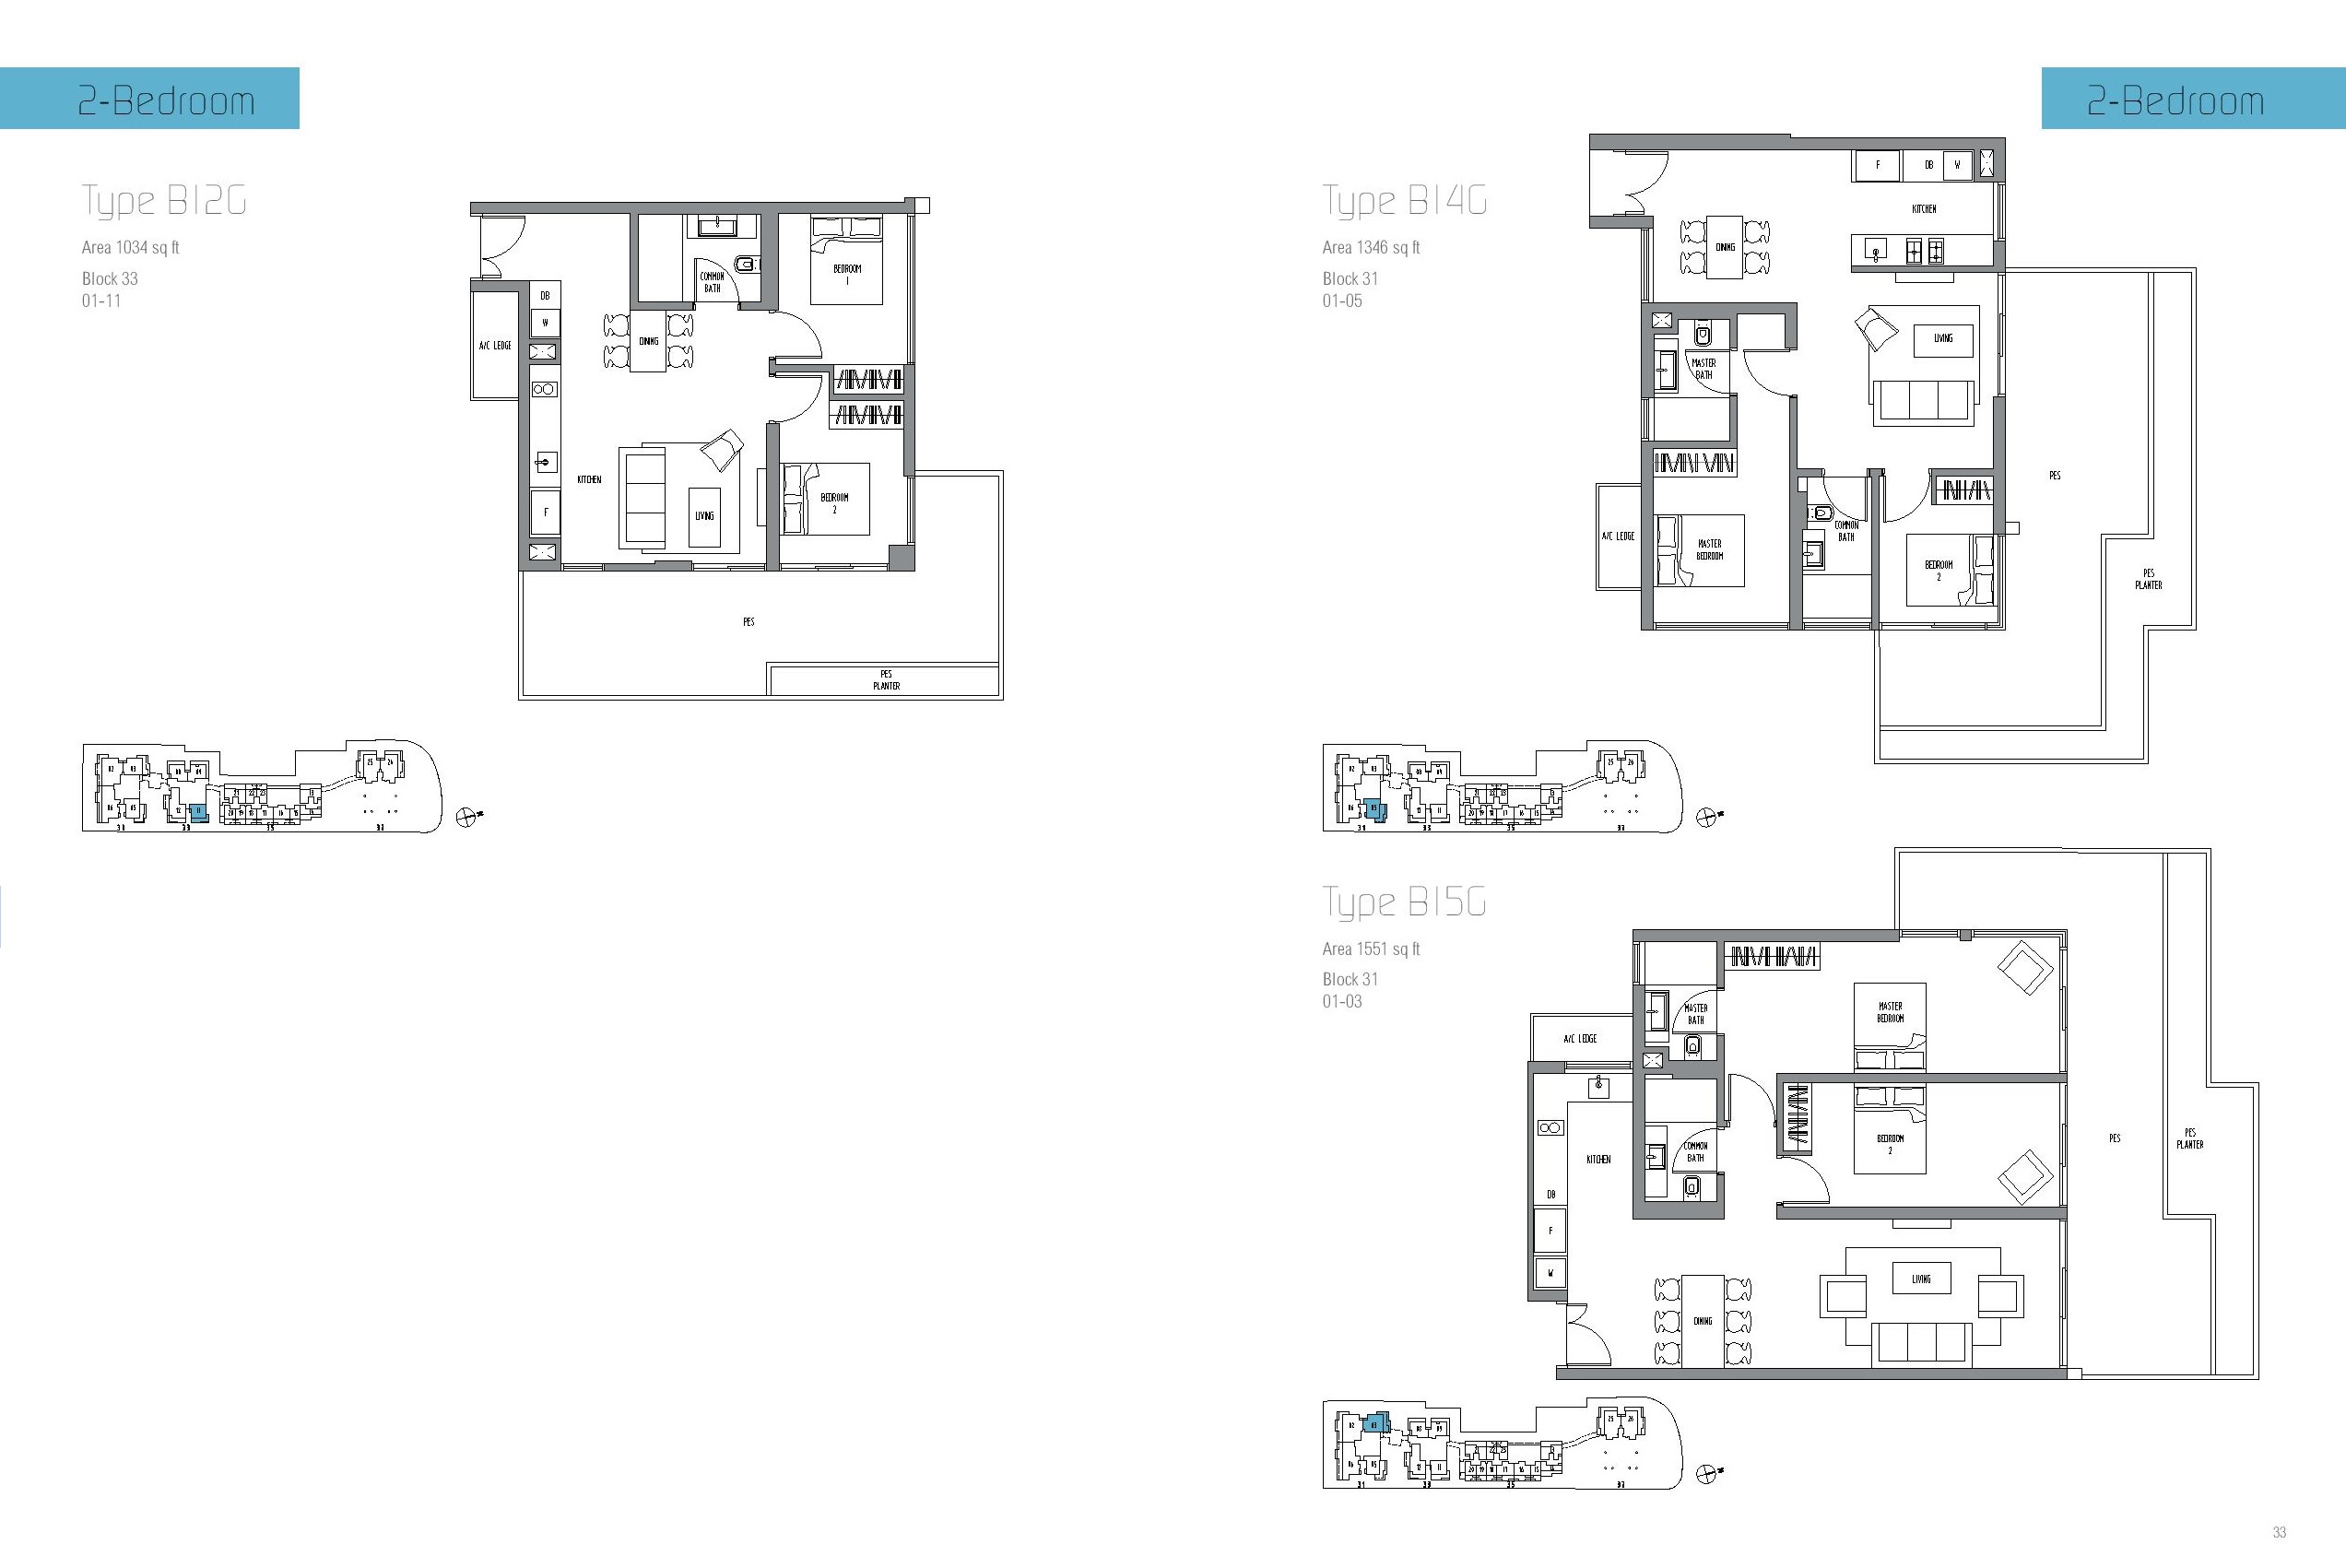 Sennett Residence 2 Bedroom Type B12G, B14G, B15G Floor Plan